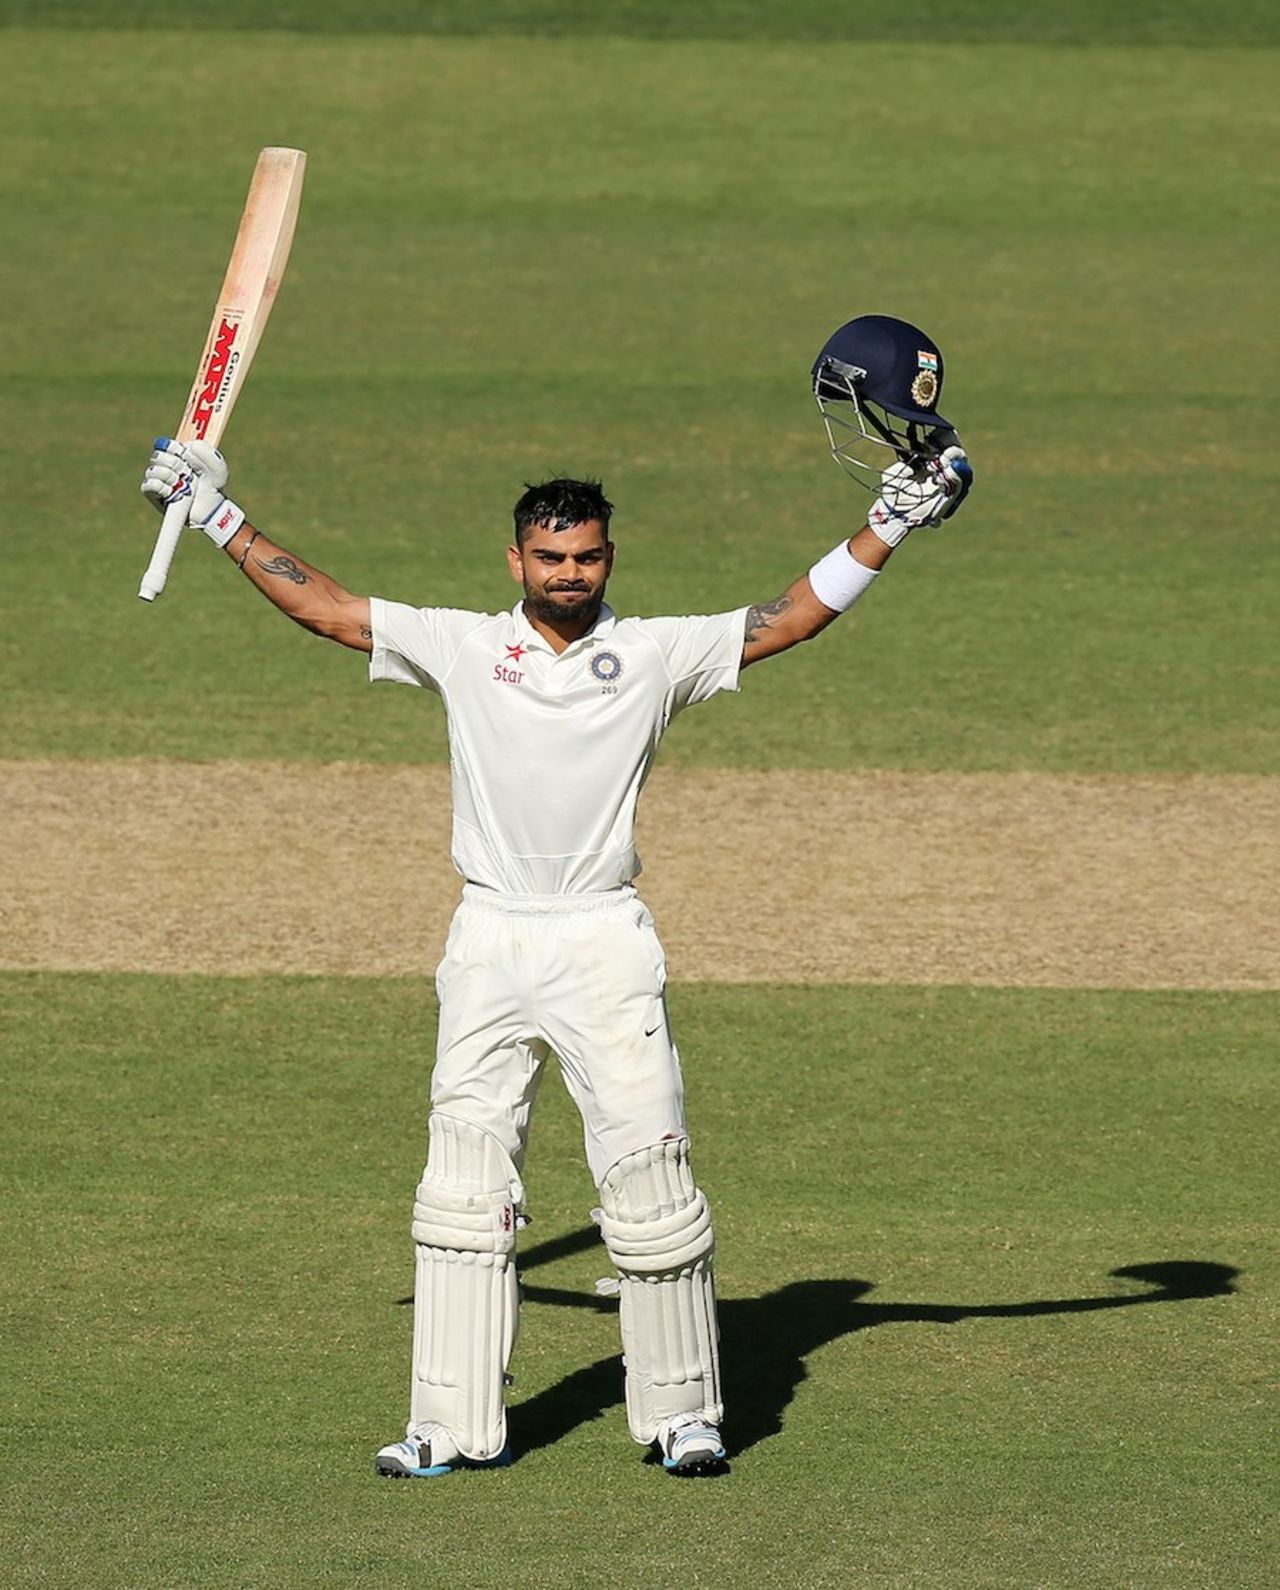 Virat Kohli celebrates a hundred in his first Test as captain, Australia v India, 1st Test, Adelaide, 3rd day, December 11, 2014